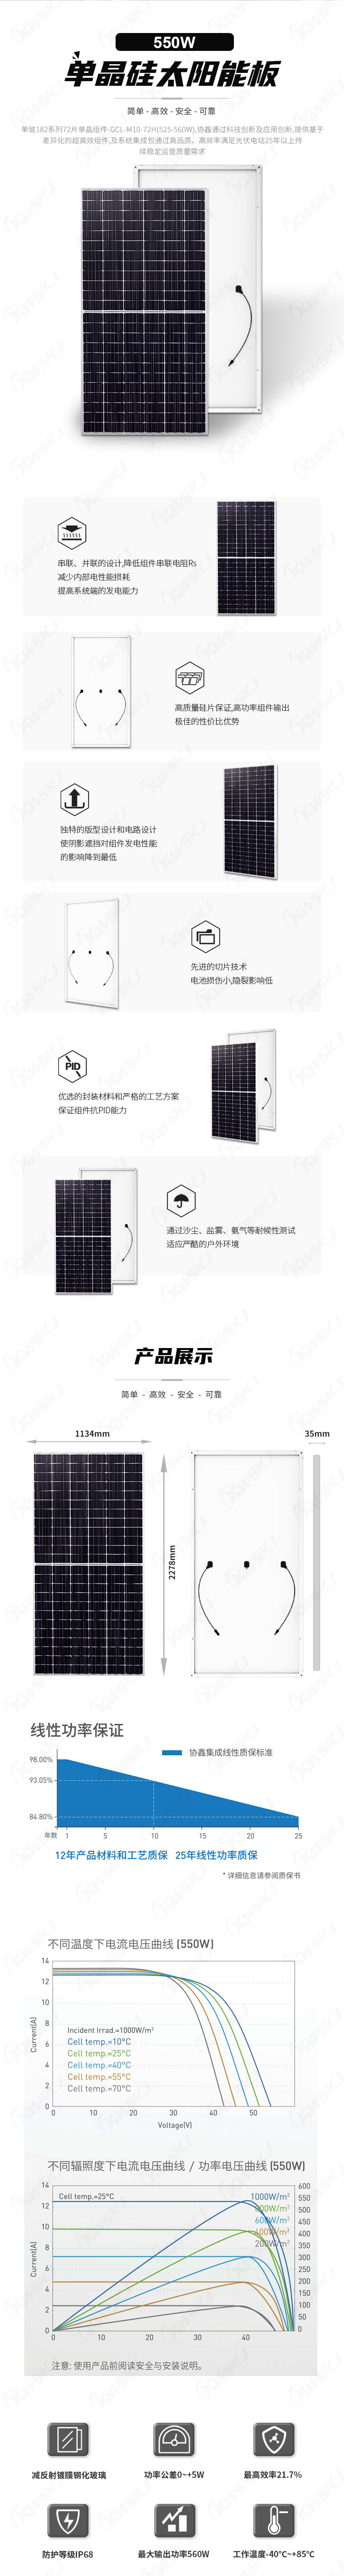 协鑫-单面单玻太阳能板525-560W（康威斯-中文）.jpg